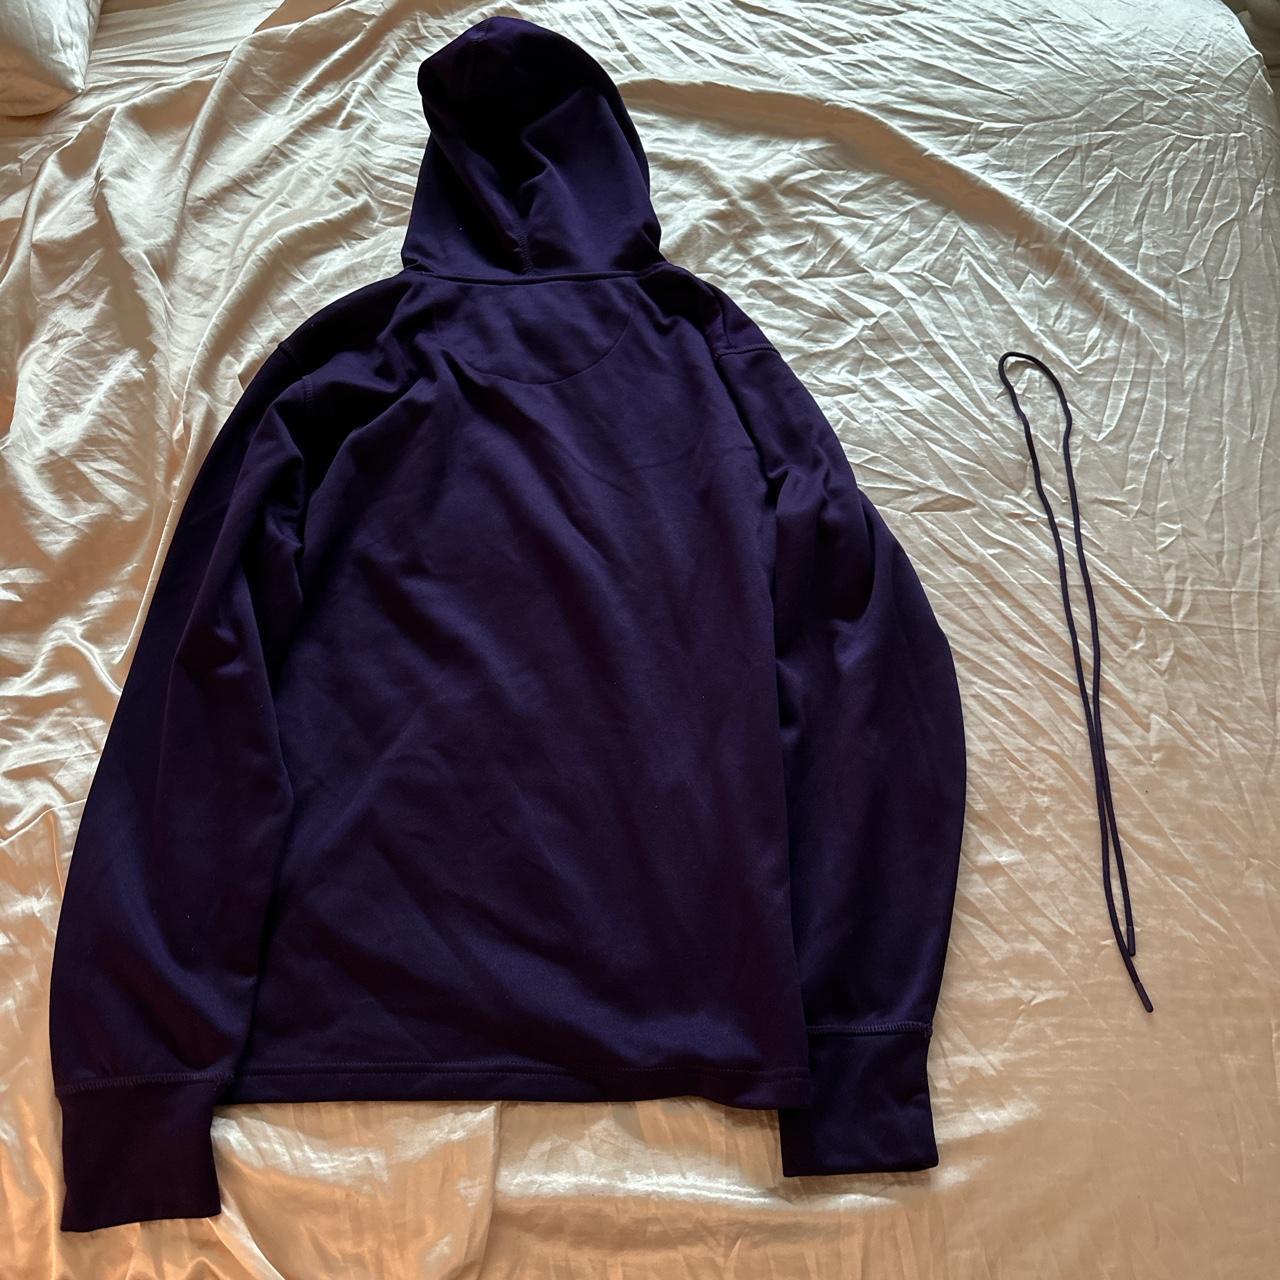 Lakers Hoodie Sweatshirt Size medium, brand new, - Depop